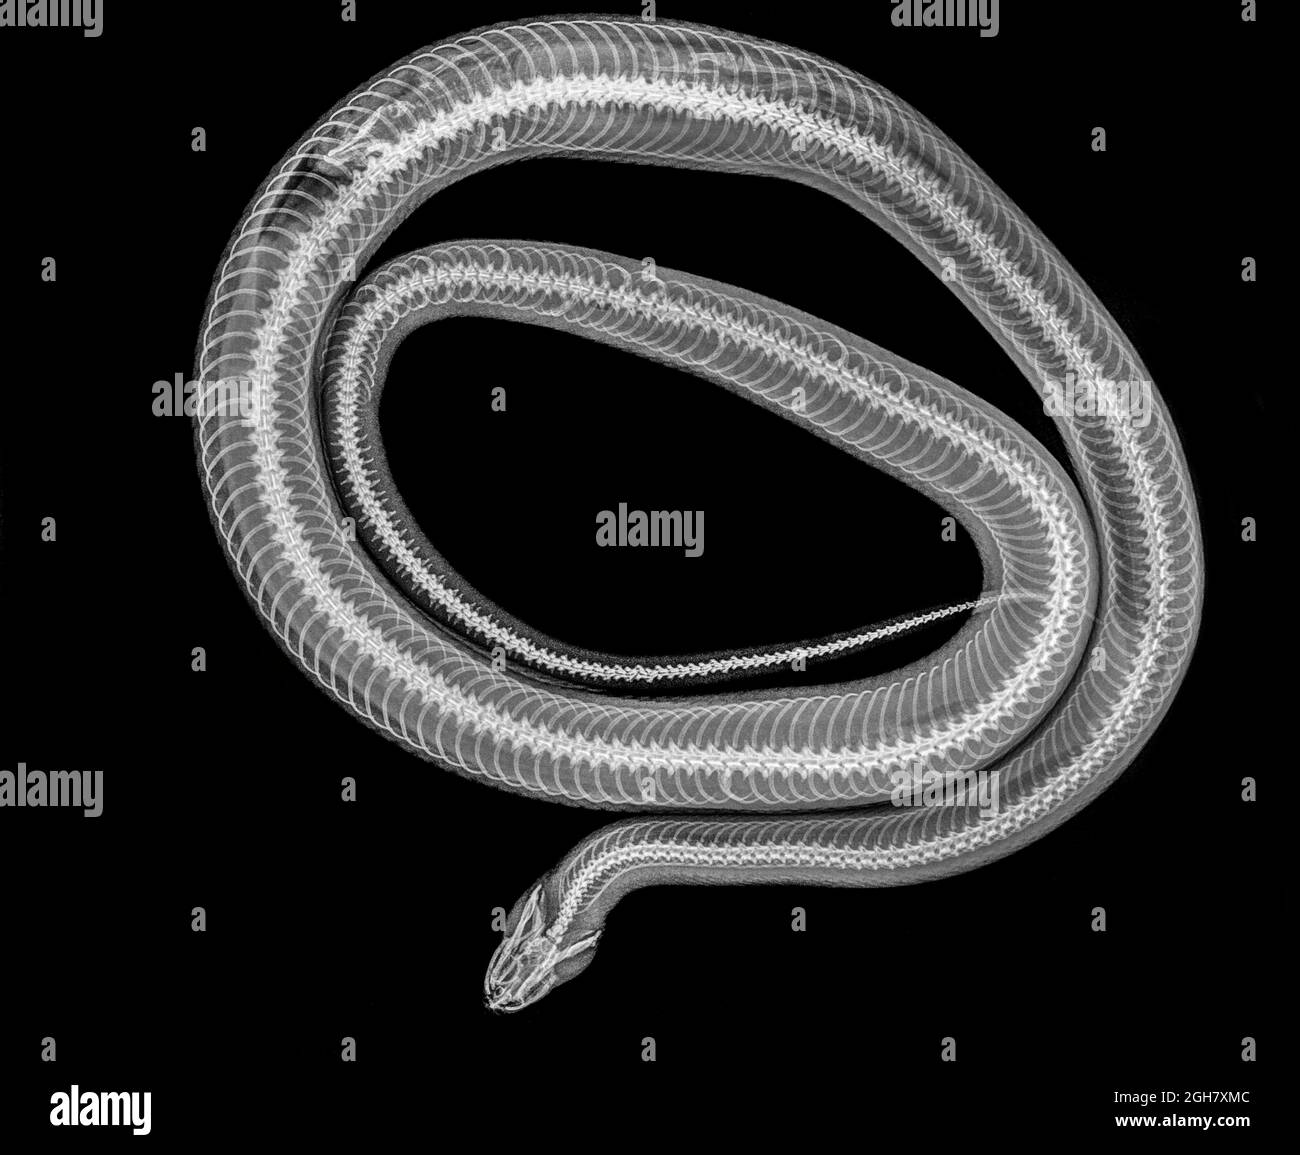 Serpent enroulé sous rayons X une souris entière peut être vu digérée sur la gauche Banque D'Images